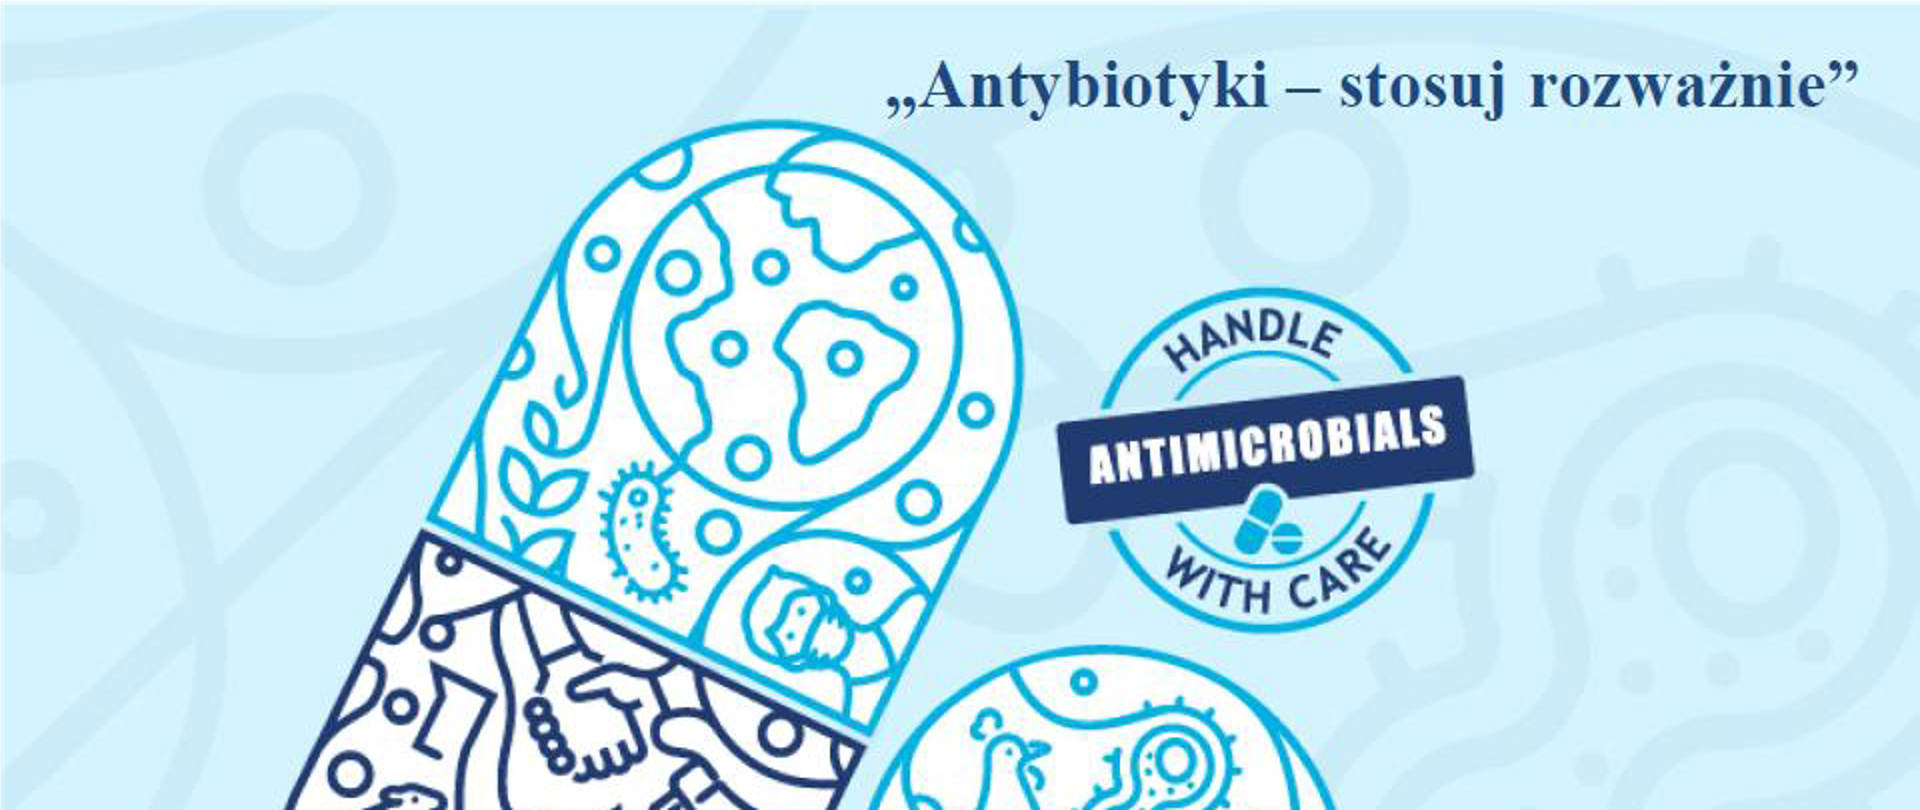 Antybiotyki - stosuj rozważnie - baner